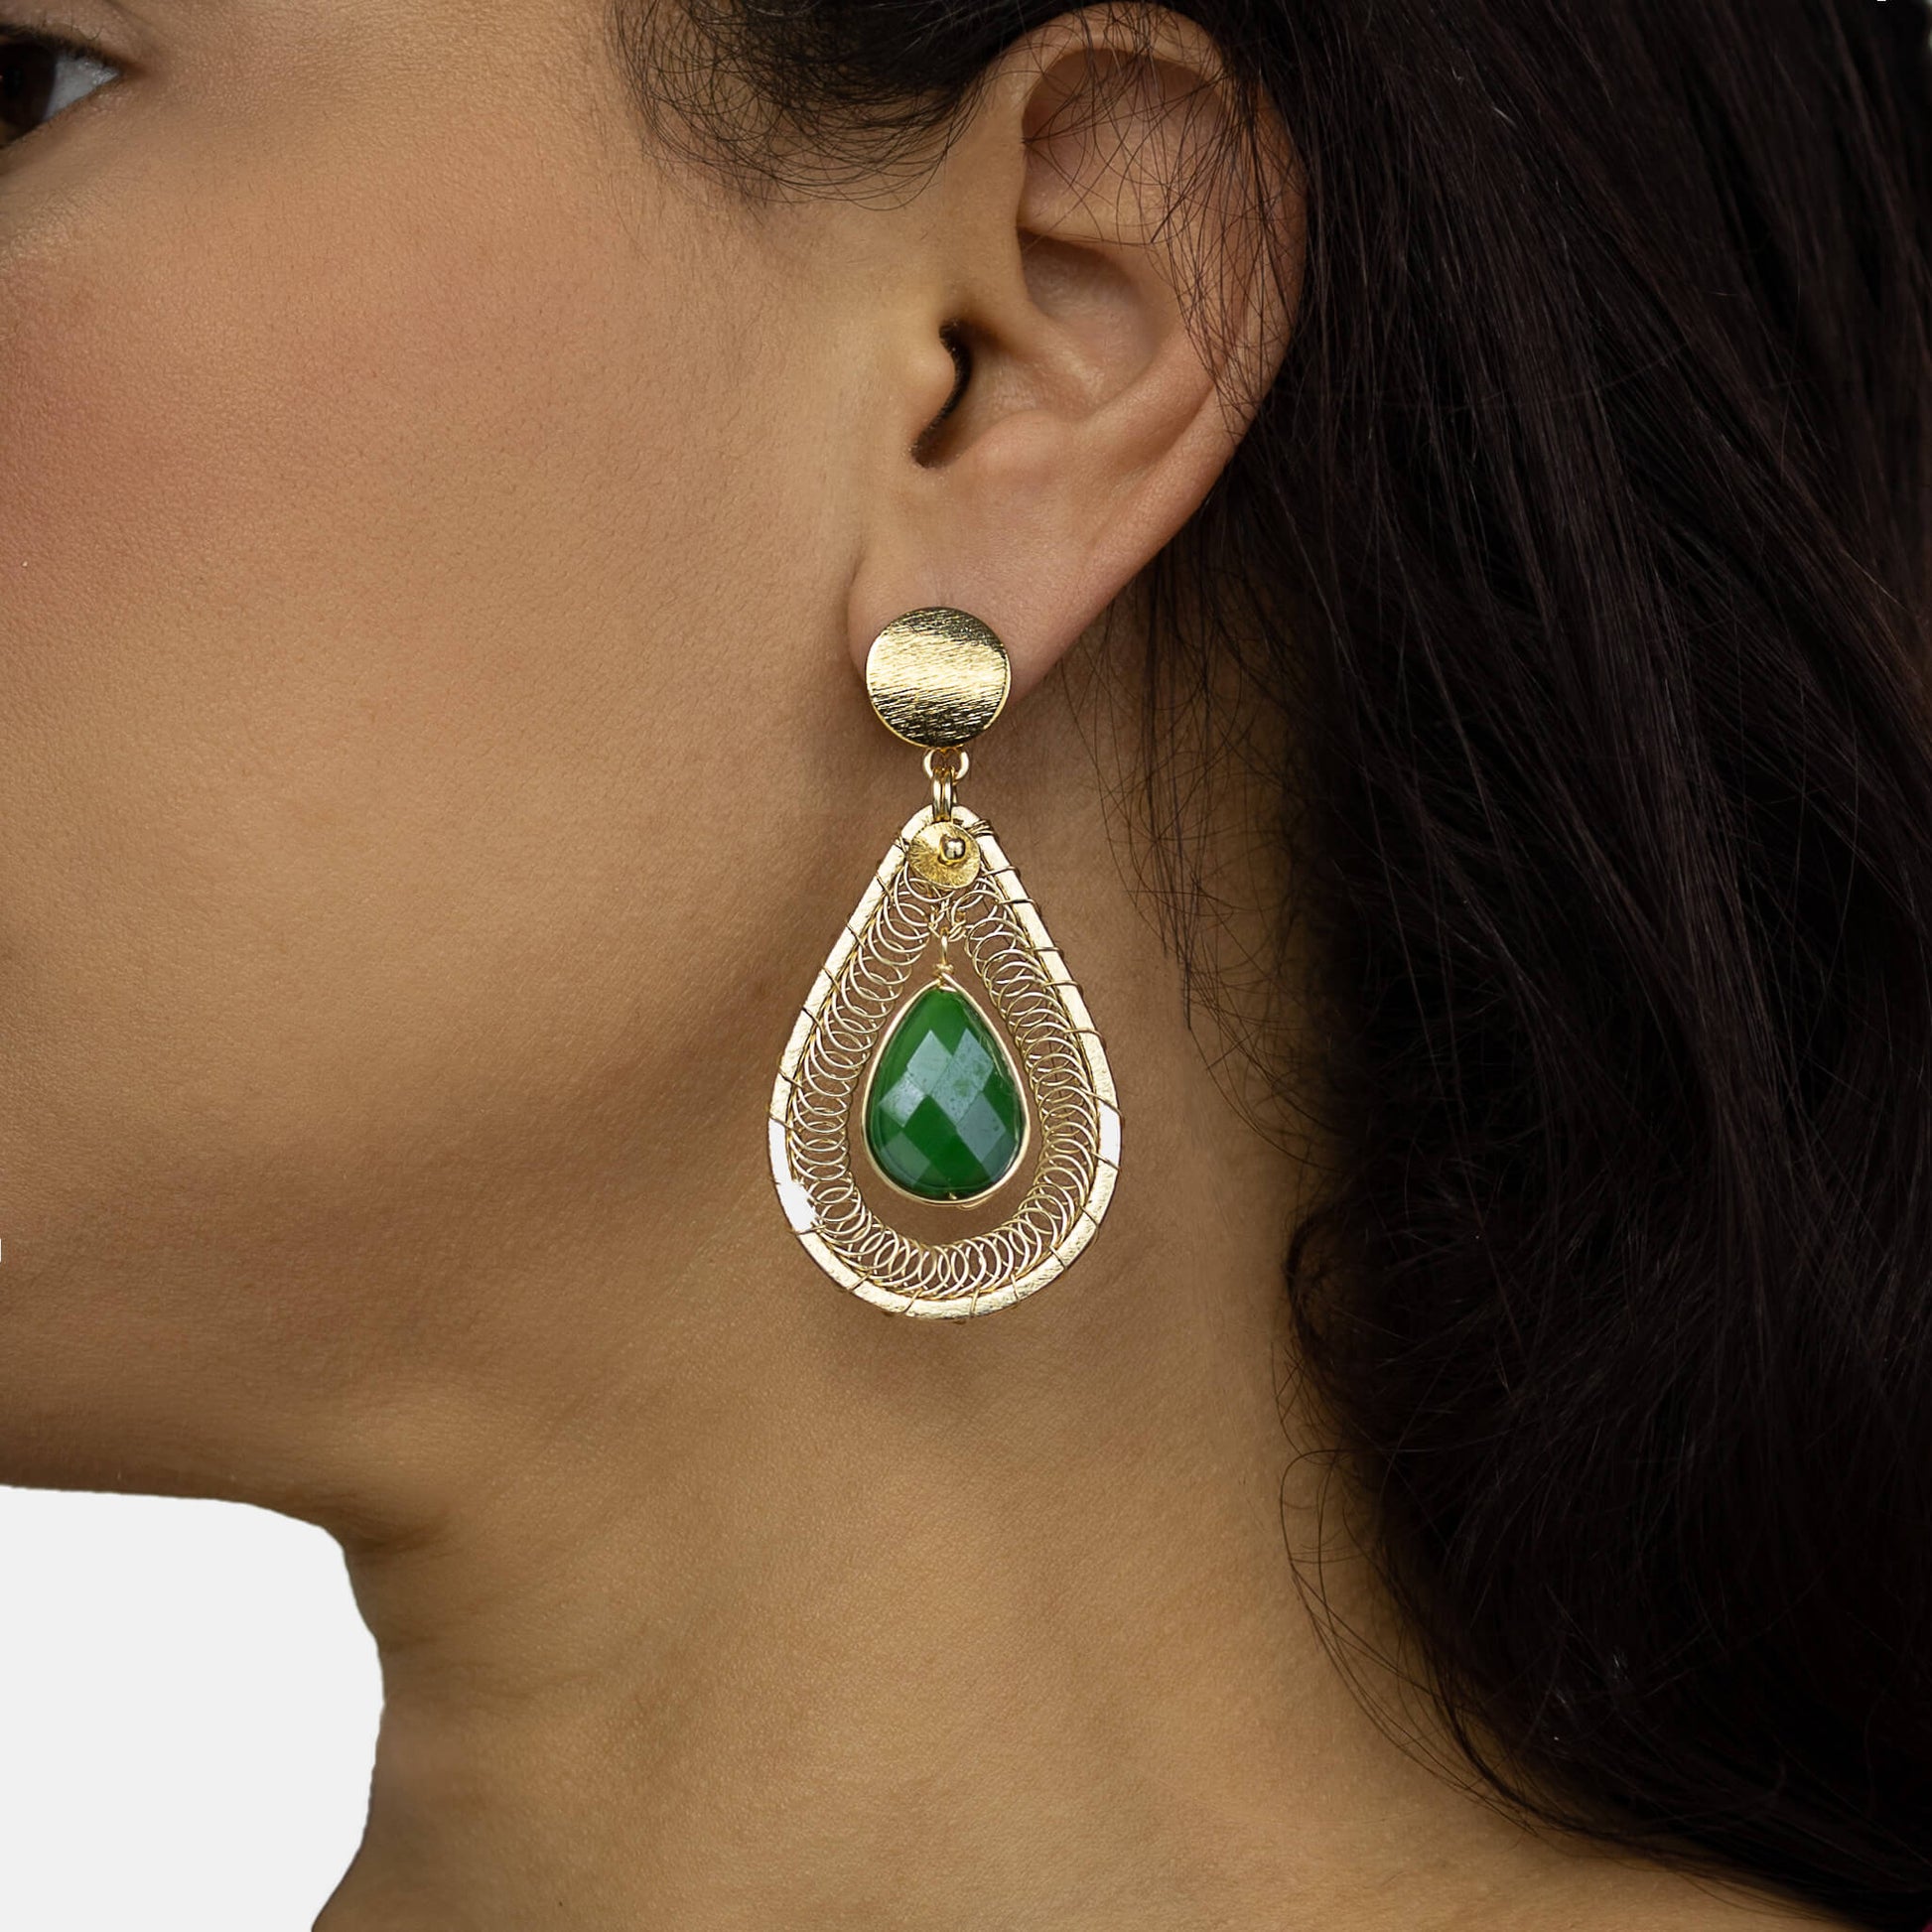 Ganika Earrings on a  model. Gold Color Earrings with Green Teardrop Crystal. Stud Earrings. Metal Frame & Wire Wrapped Earrings. 